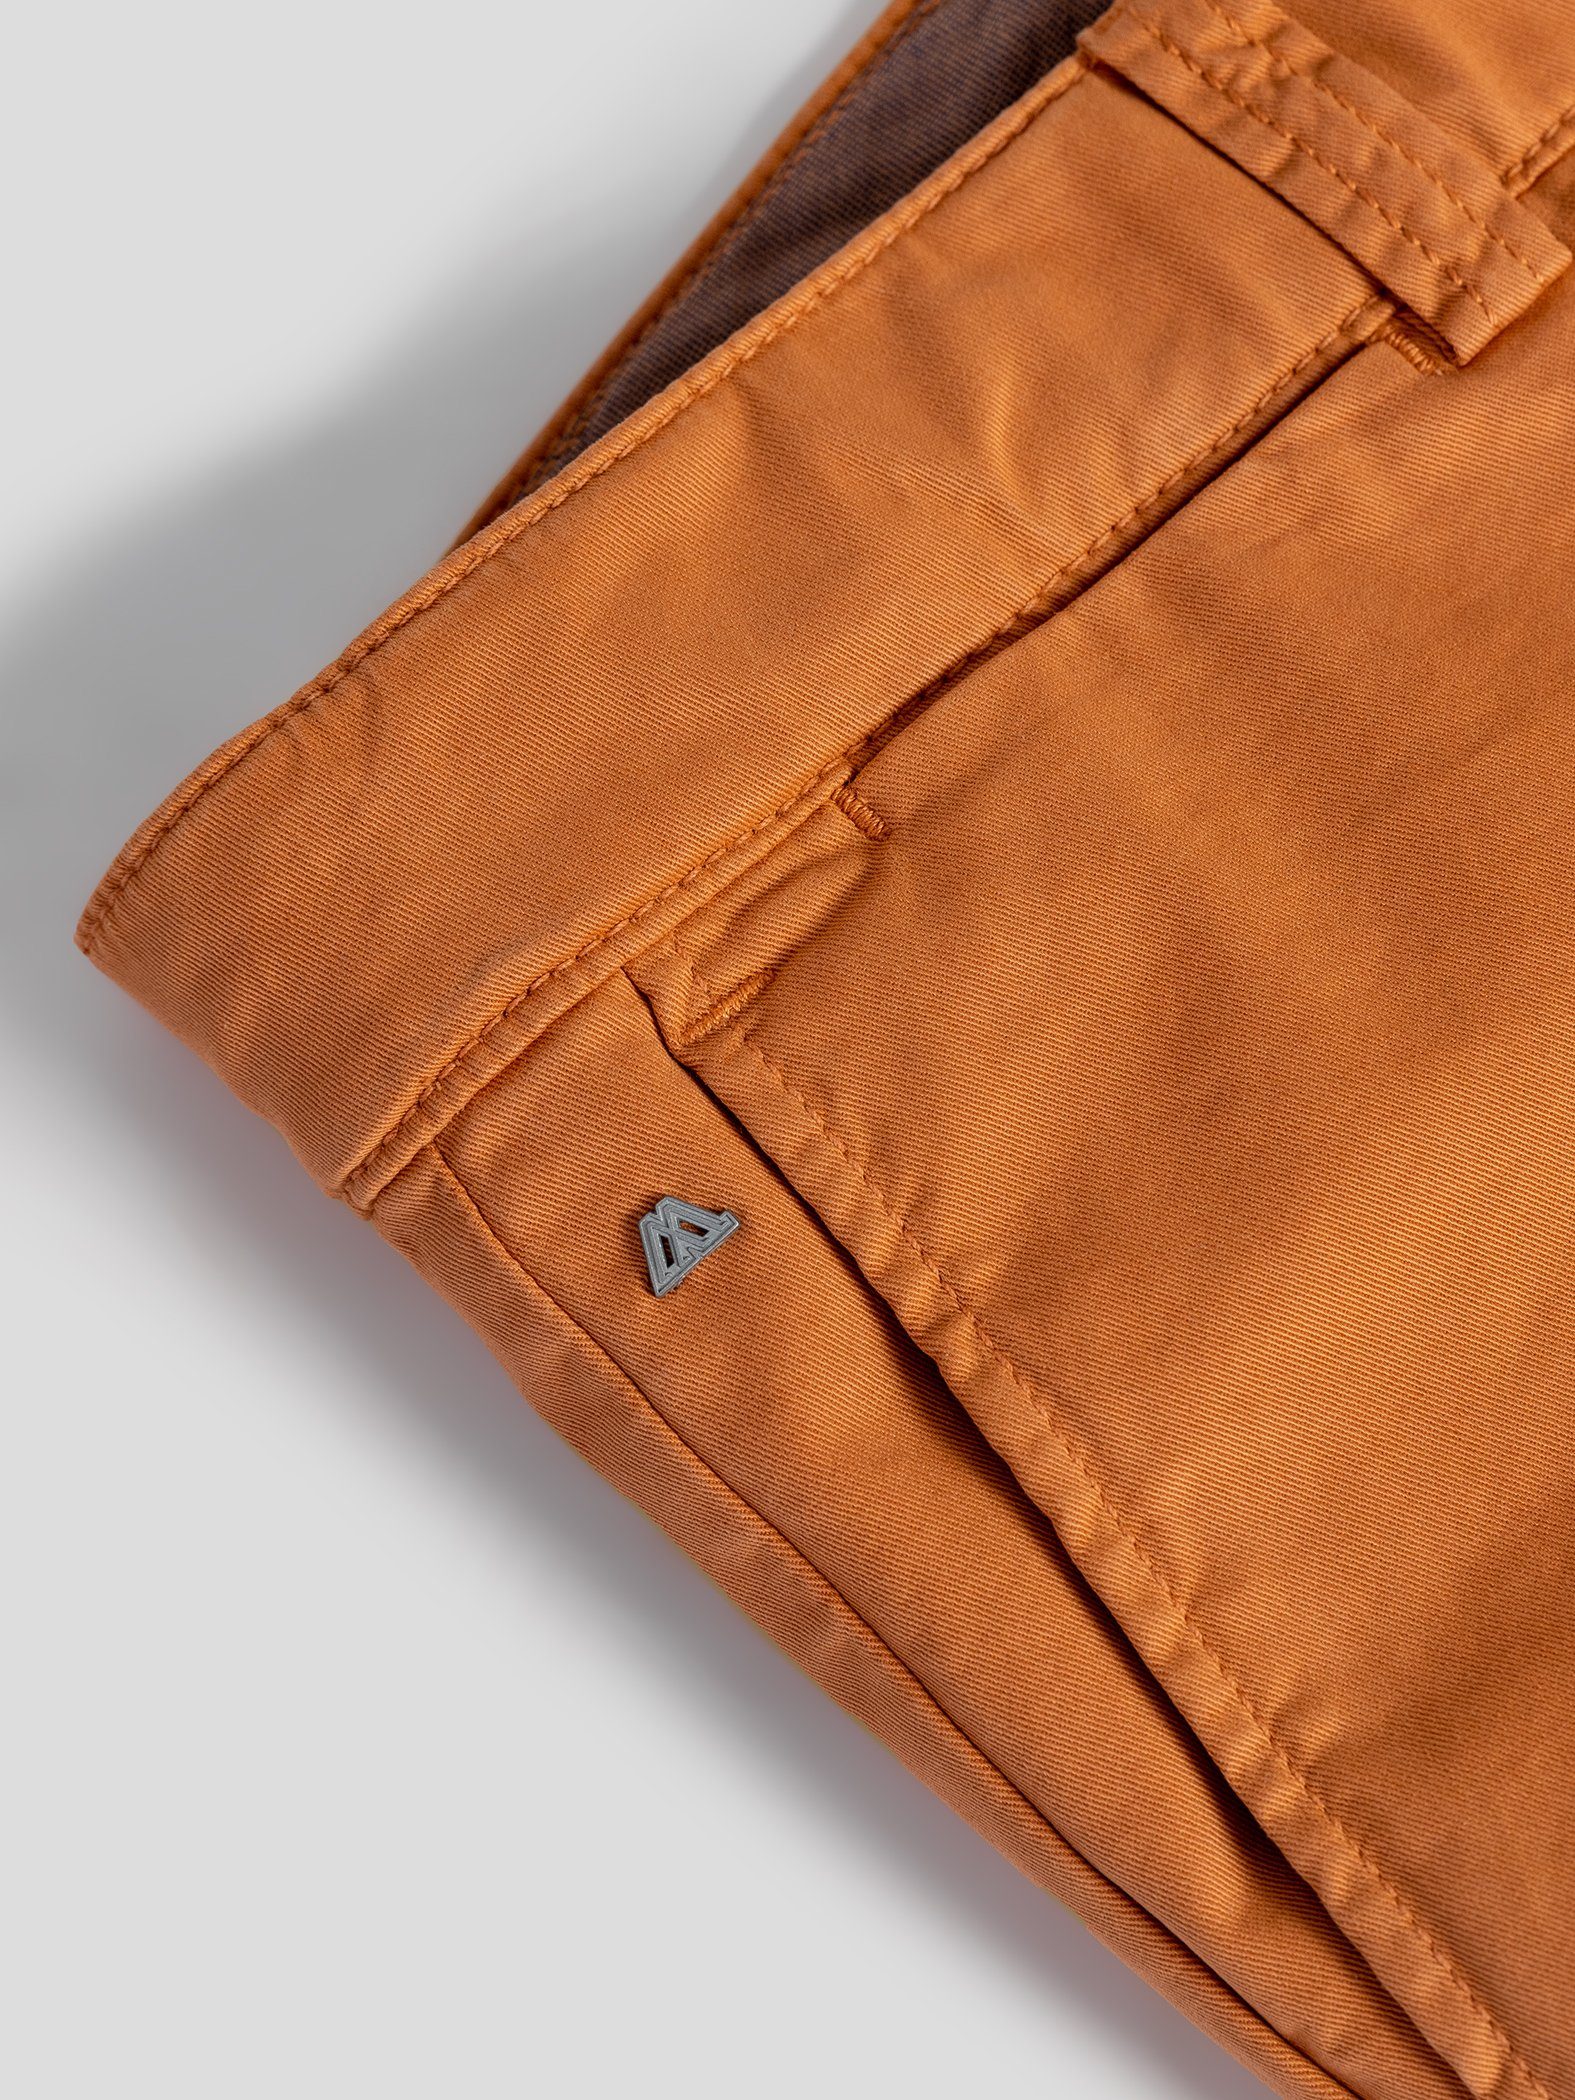 TwoMates Shorts Shorts mit GOTS-zertifiziert Bund, Orange Farbauswahl, elastischem